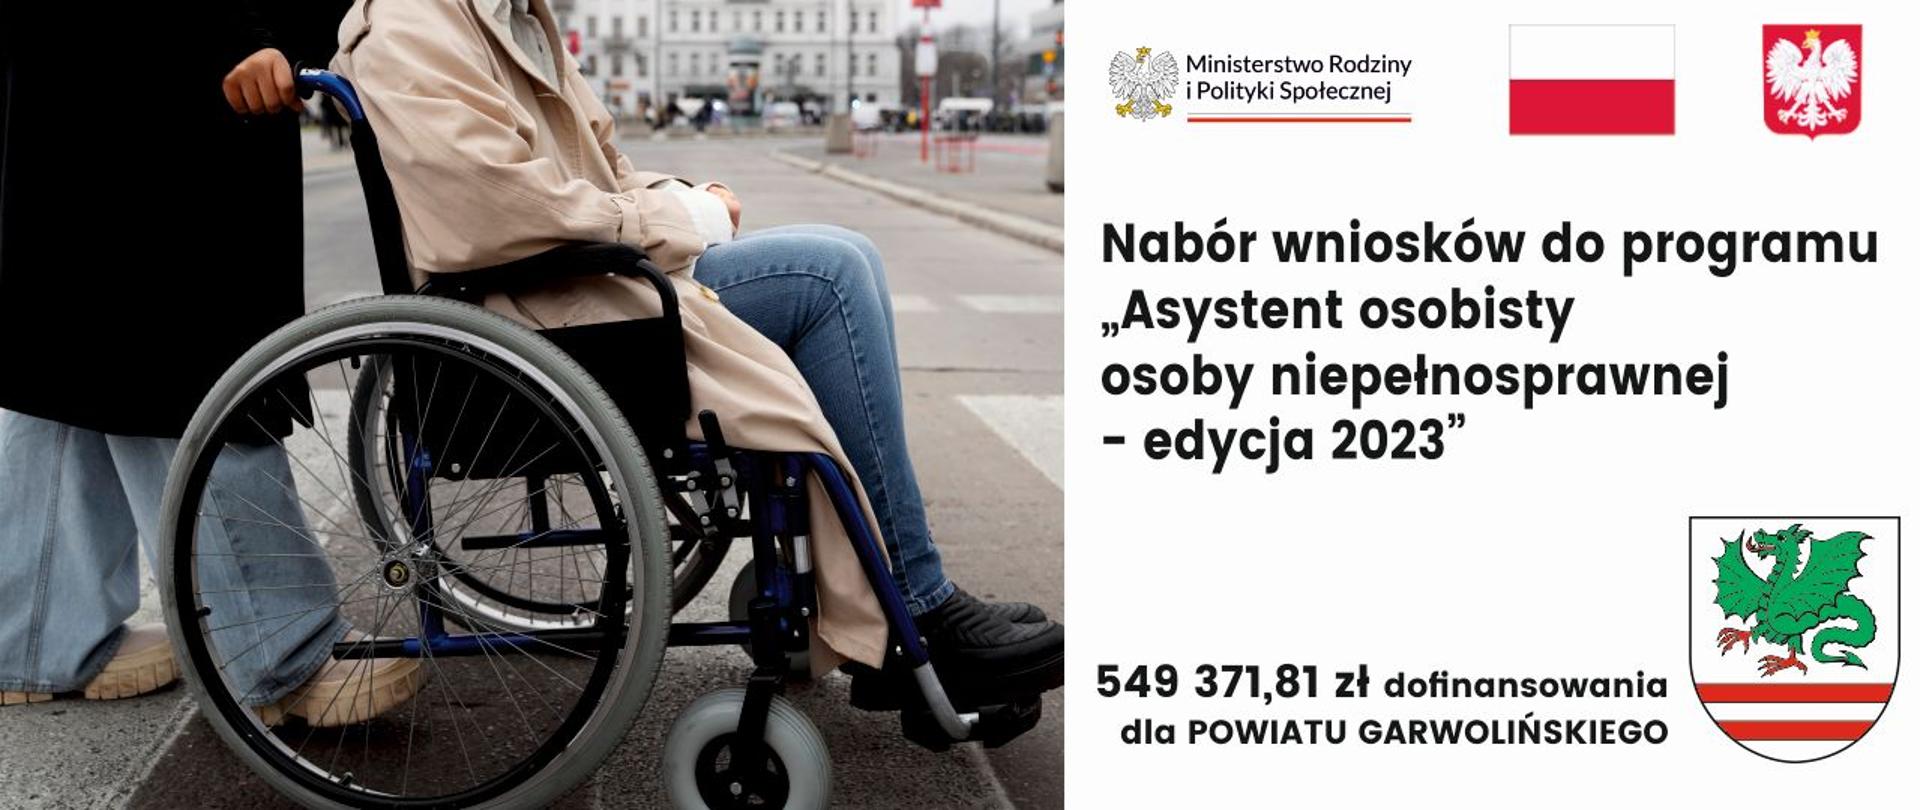 Asystent osobisty osoby niepełnosprawnej - edycja 2023 